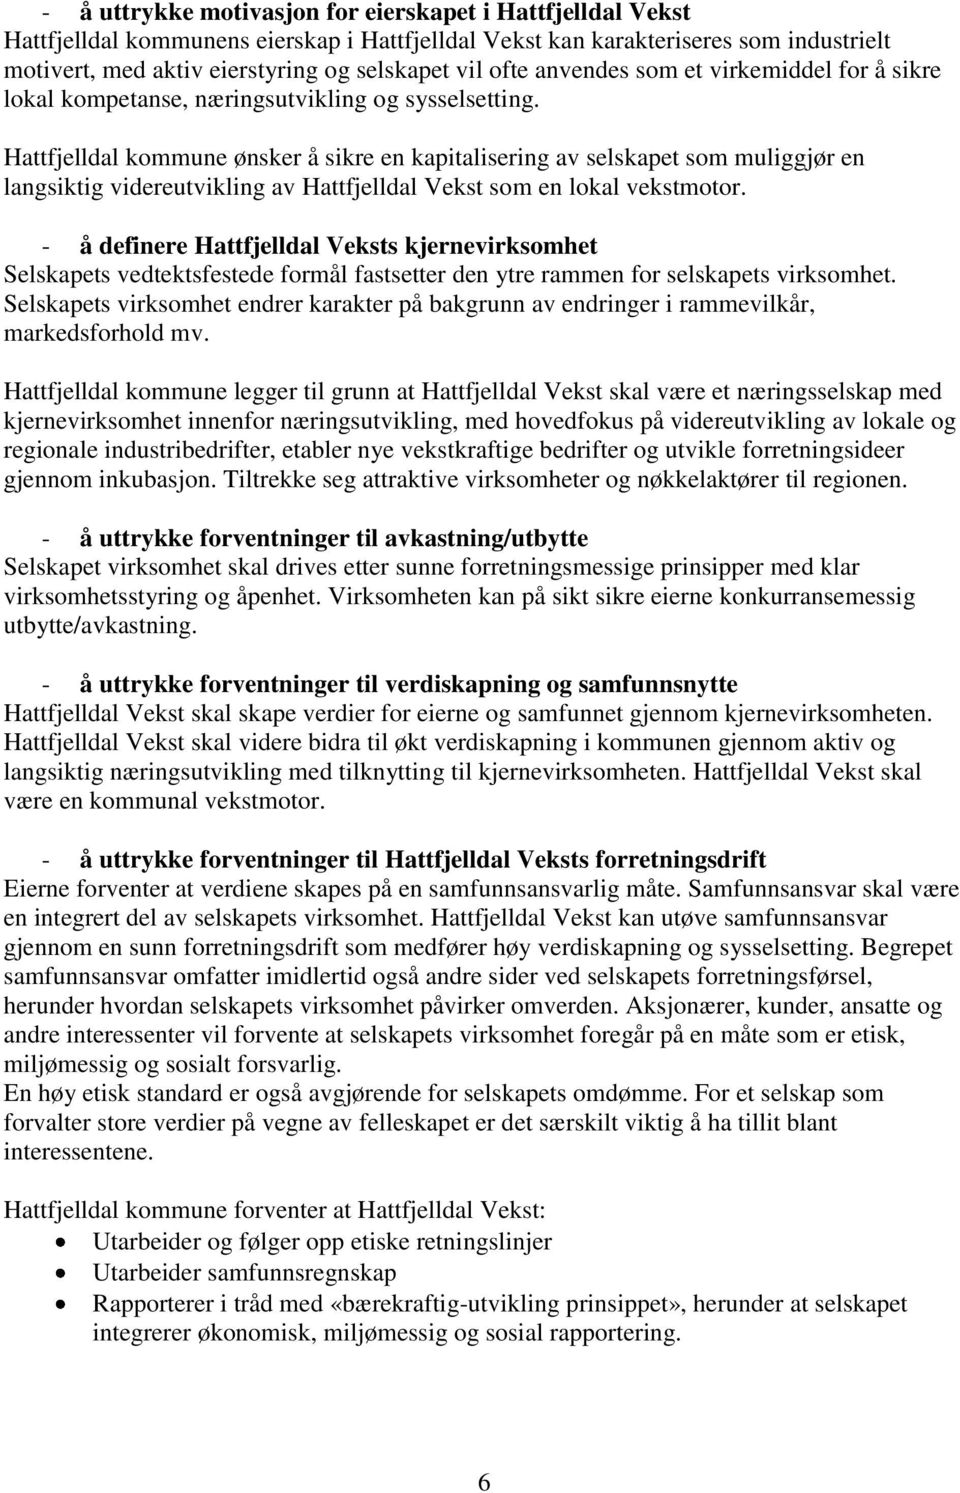 Hattfjelldal kommune ønsker å sikre en kapitalisering av selskapet som muliggjør en langsiktig videreutvikling av Hattfjelldal Vekst som en lokal vekstmotor.